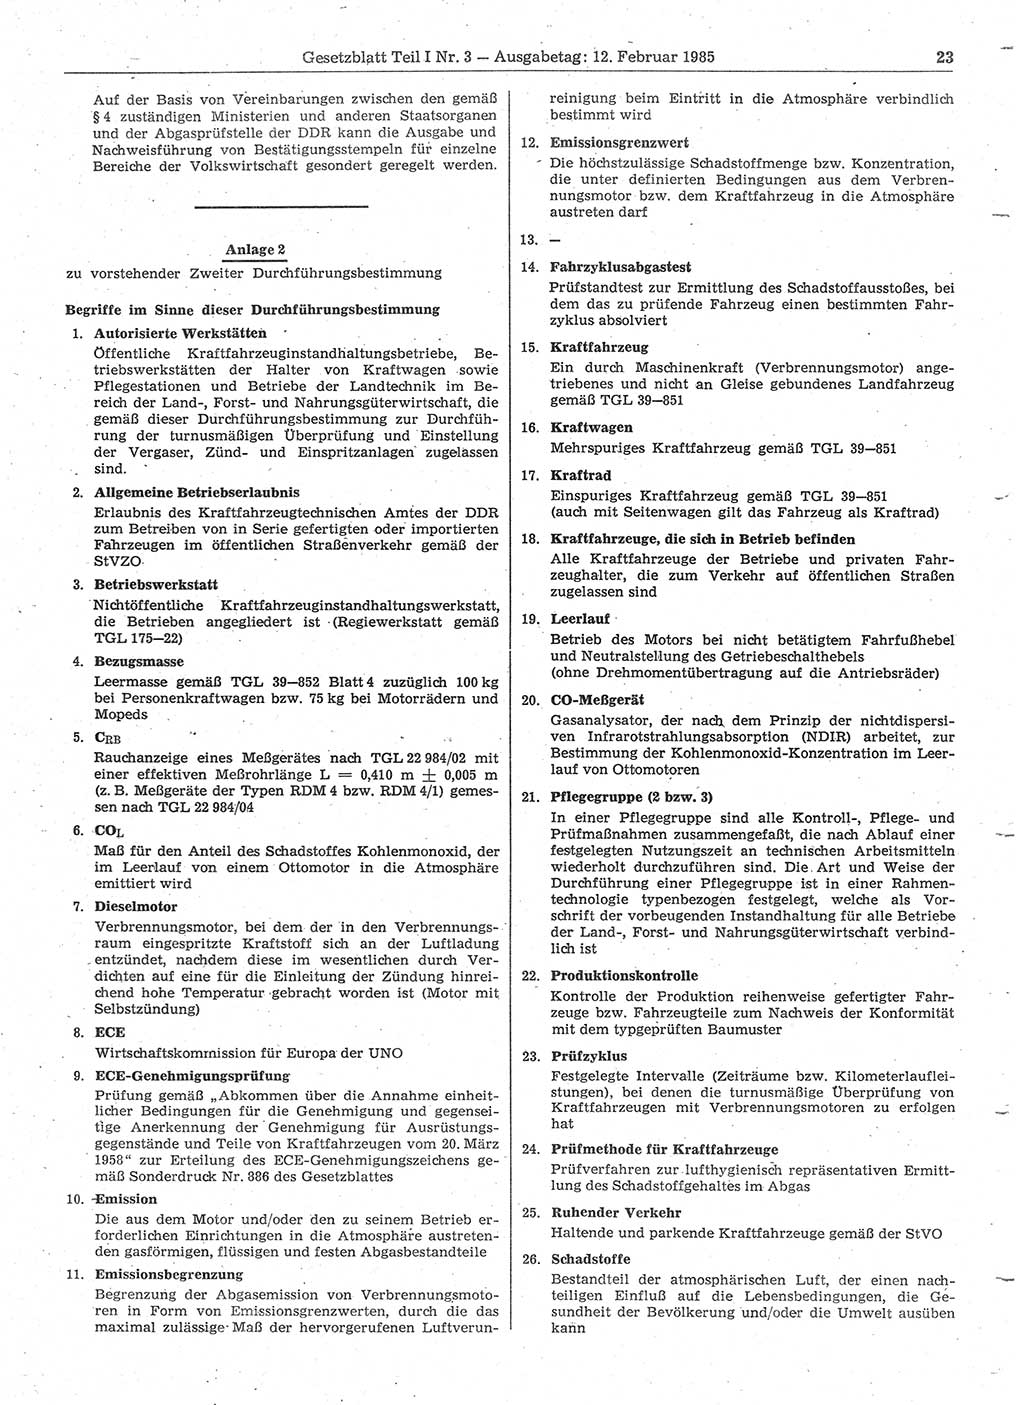 Gesetzblatt (GBl.) der Deutschen Demokratischen Republik (DDR) Teil Ⅰ 1985, Seite 23 (GBl. DDR Ⅰ 1985, S. 23)